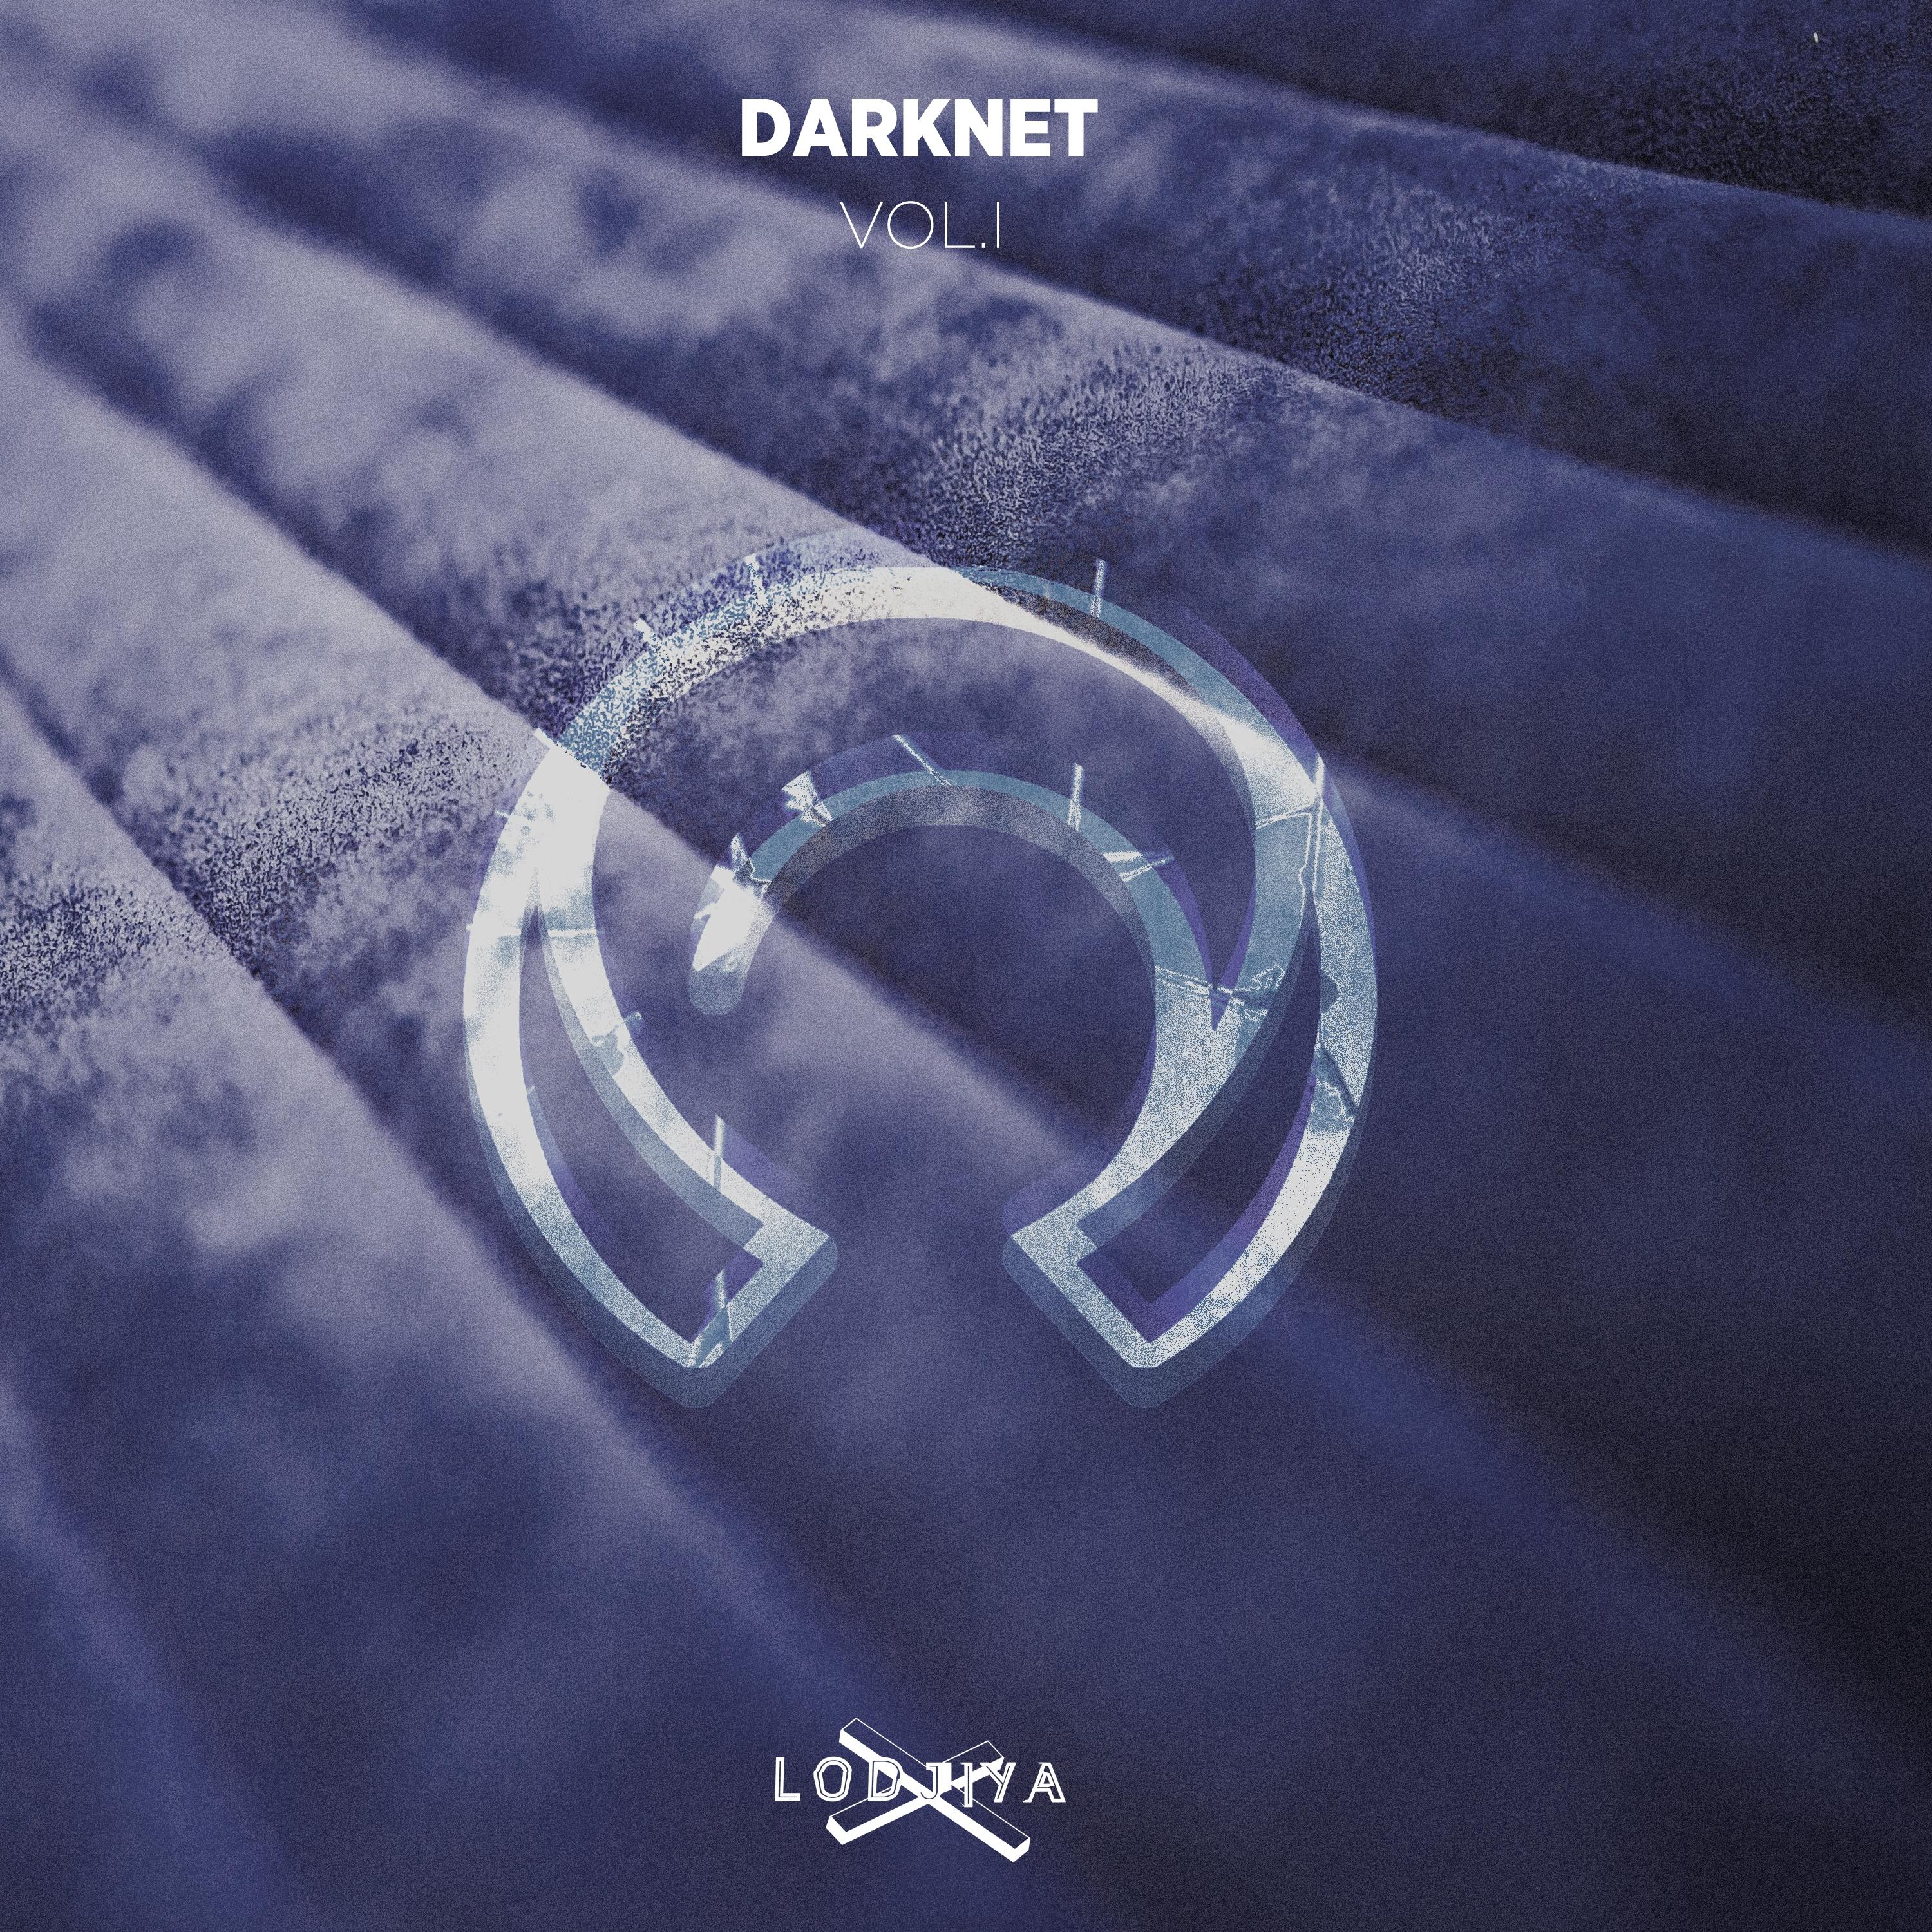 Darknet Vol.1